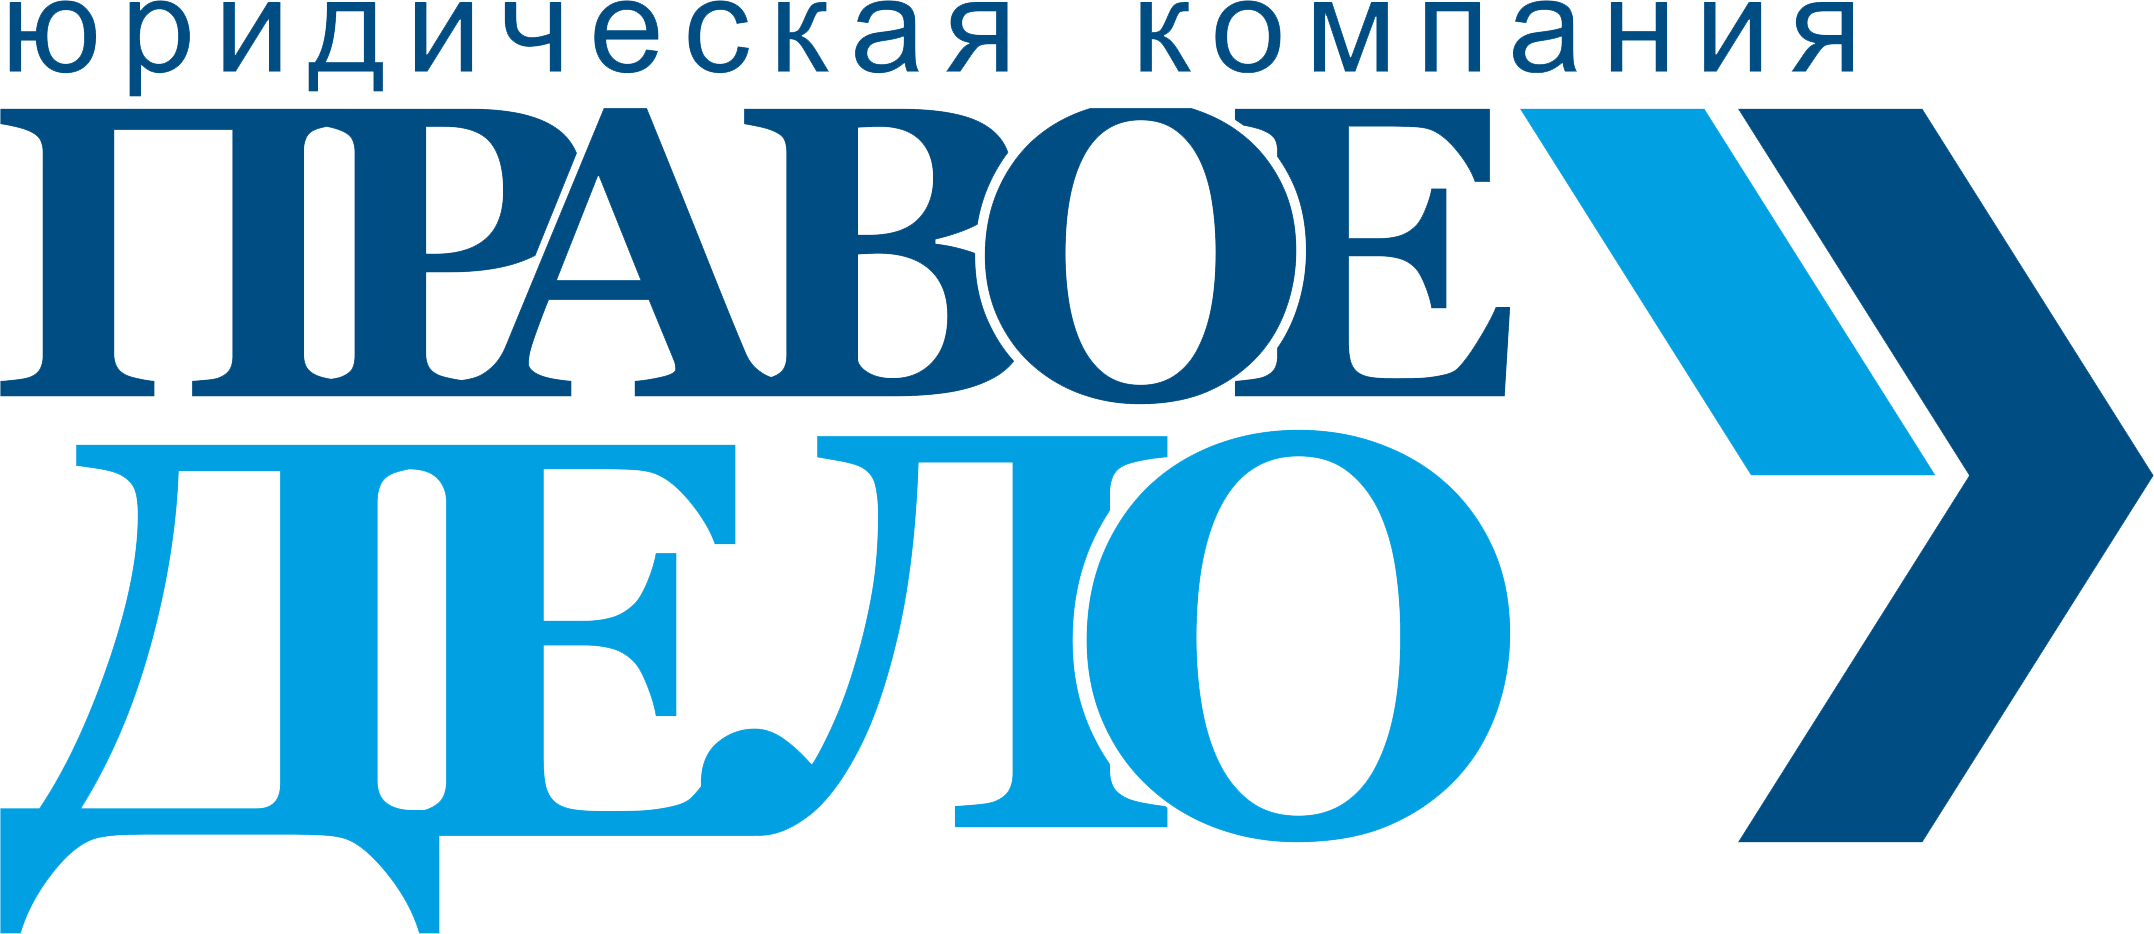 Pravoedelo.com.ua Logo